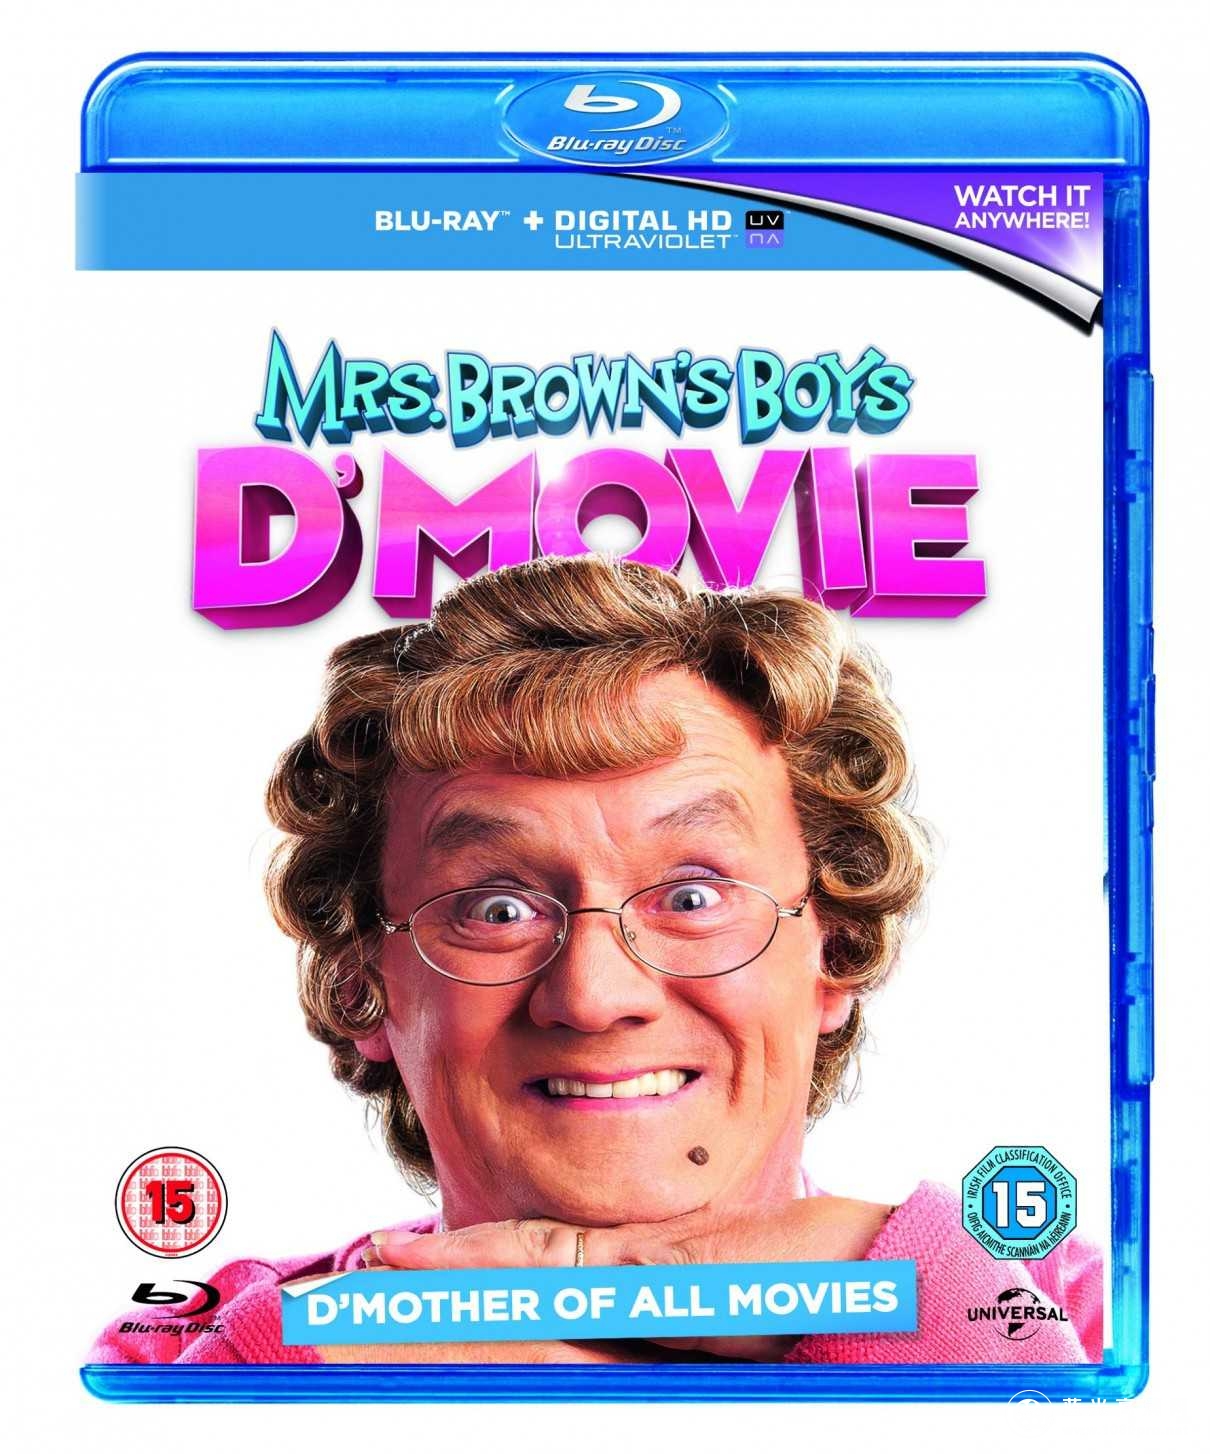 布朗夫人的儿子们大电影 Mrs.Browns.Boys.D.Movie.2014.720p.BluRay.x264-ROVERS 4.37GB-1.jpg